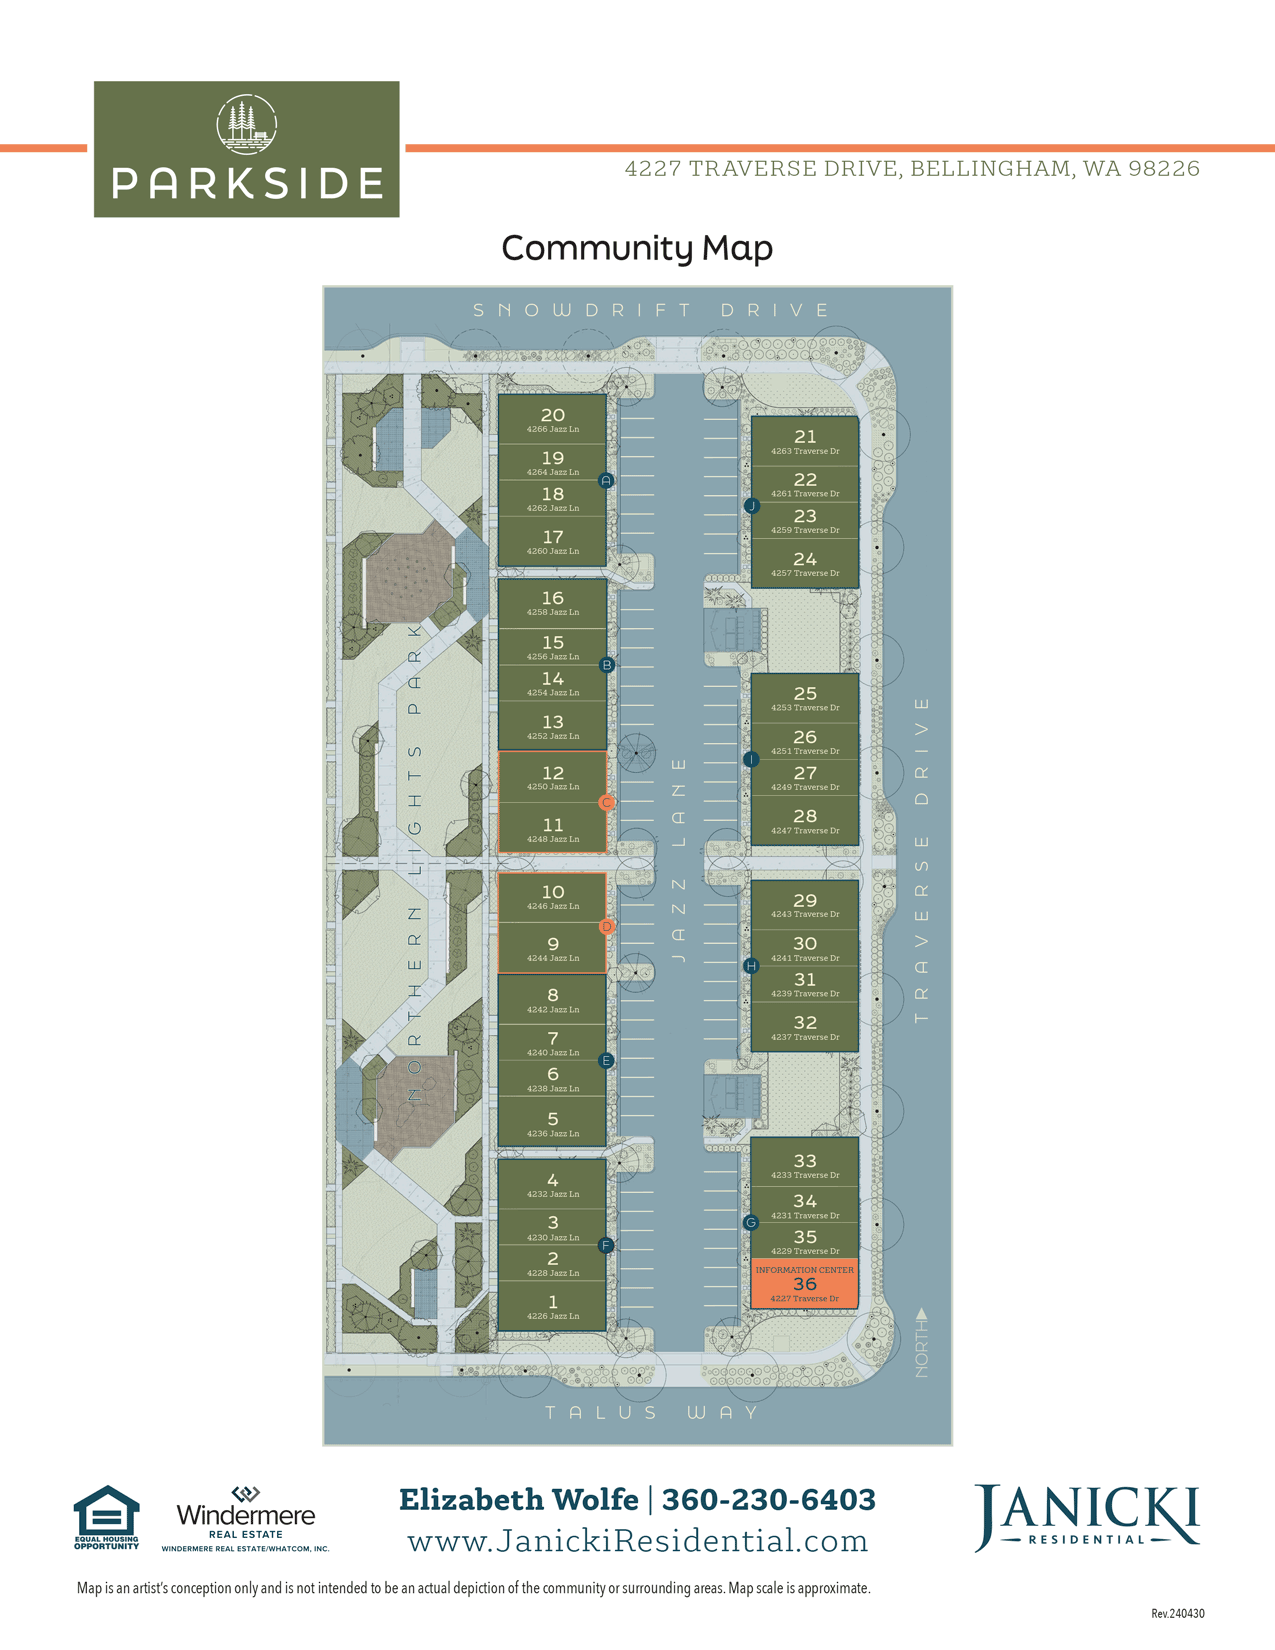 Parkside Community Map